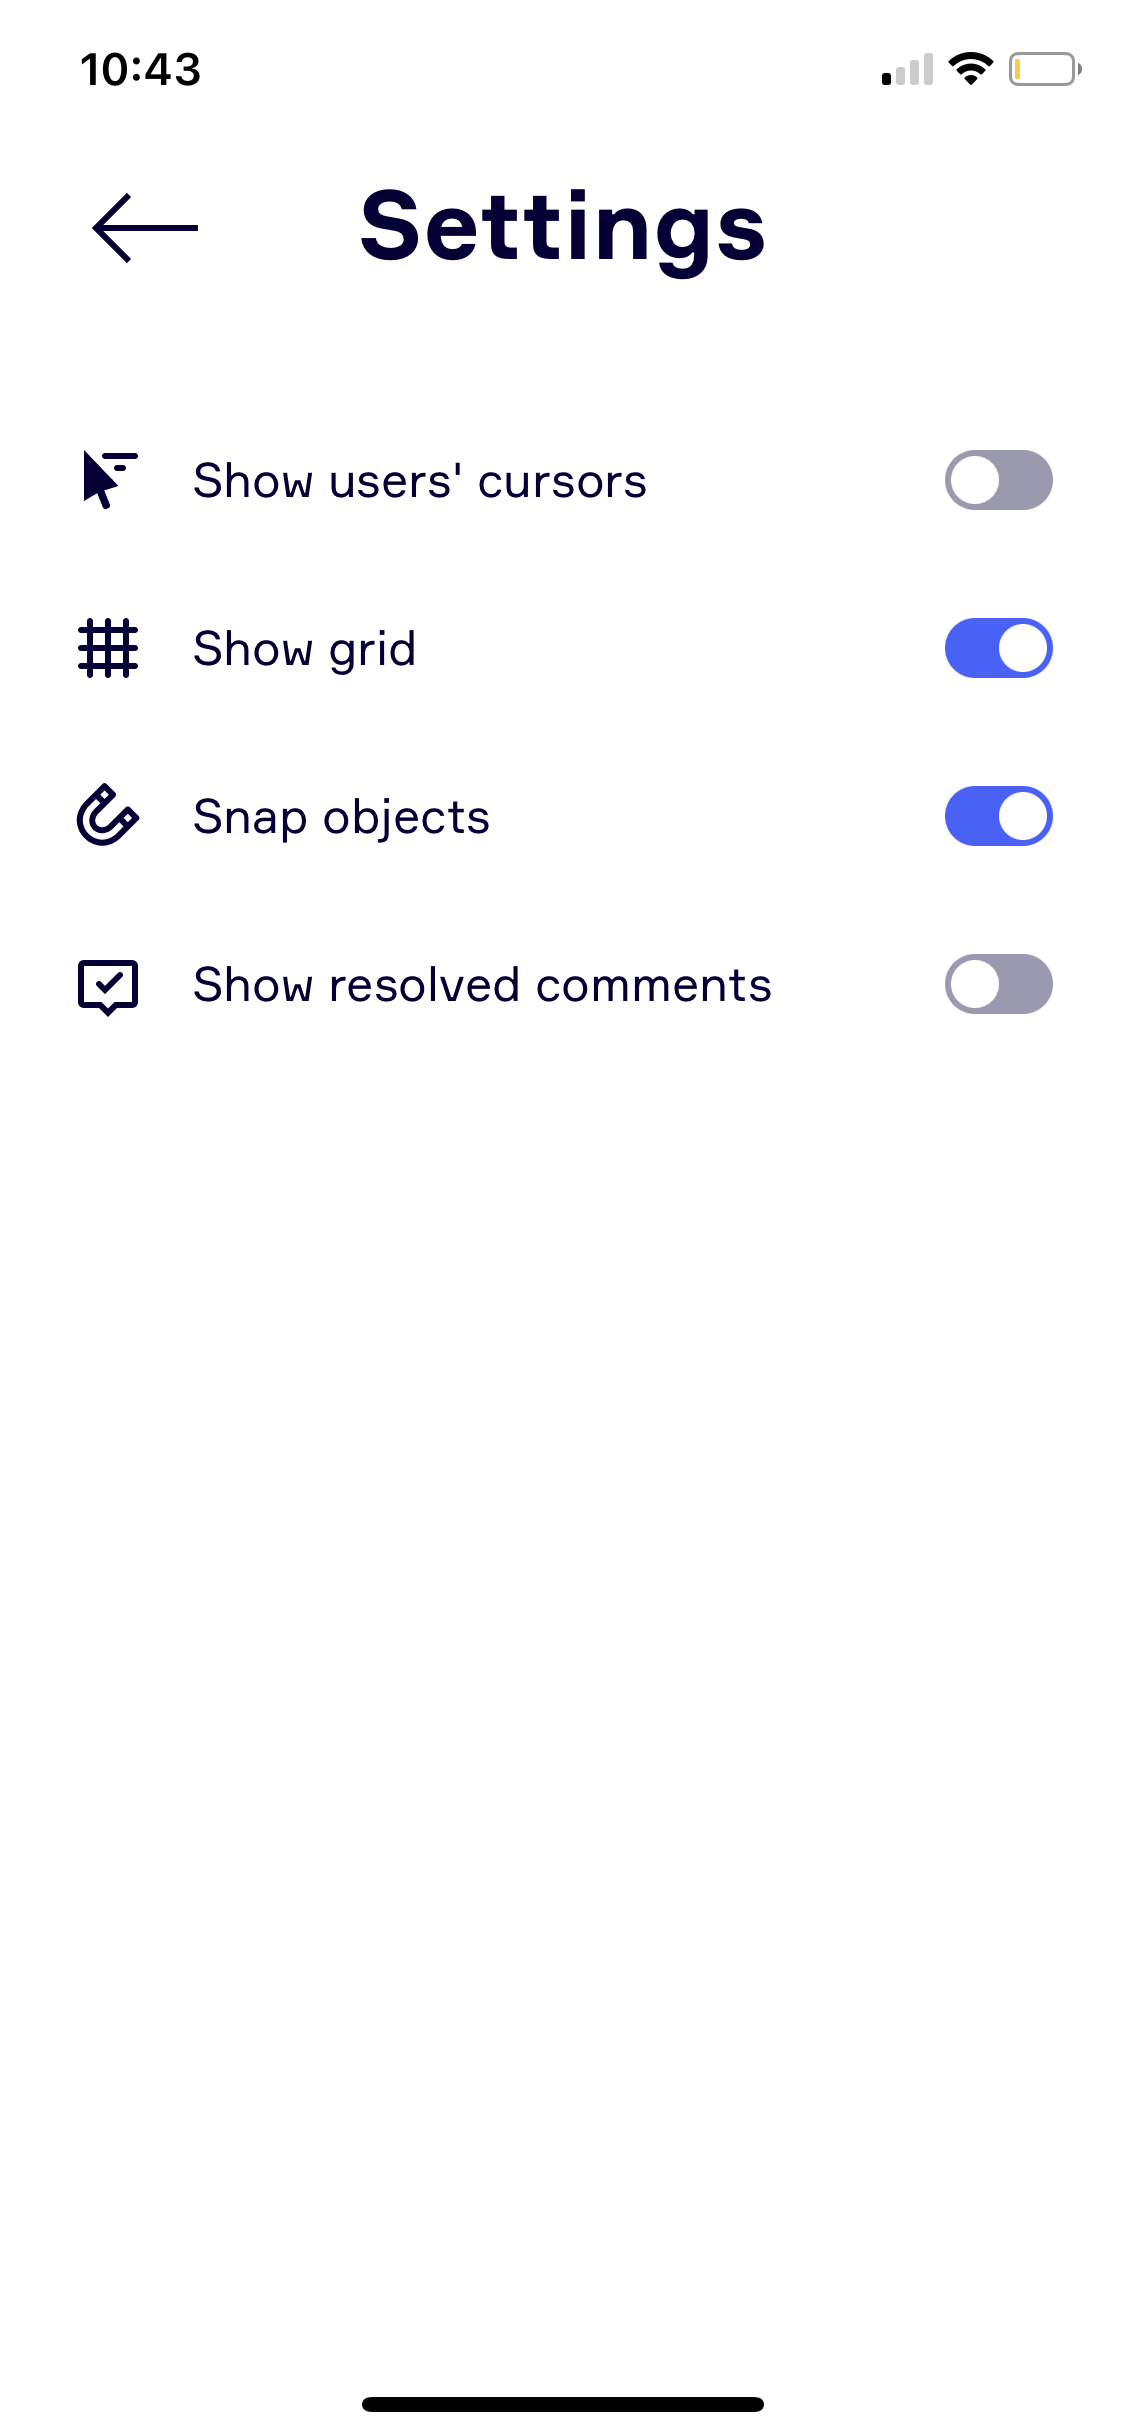 Miro board settings screenshot